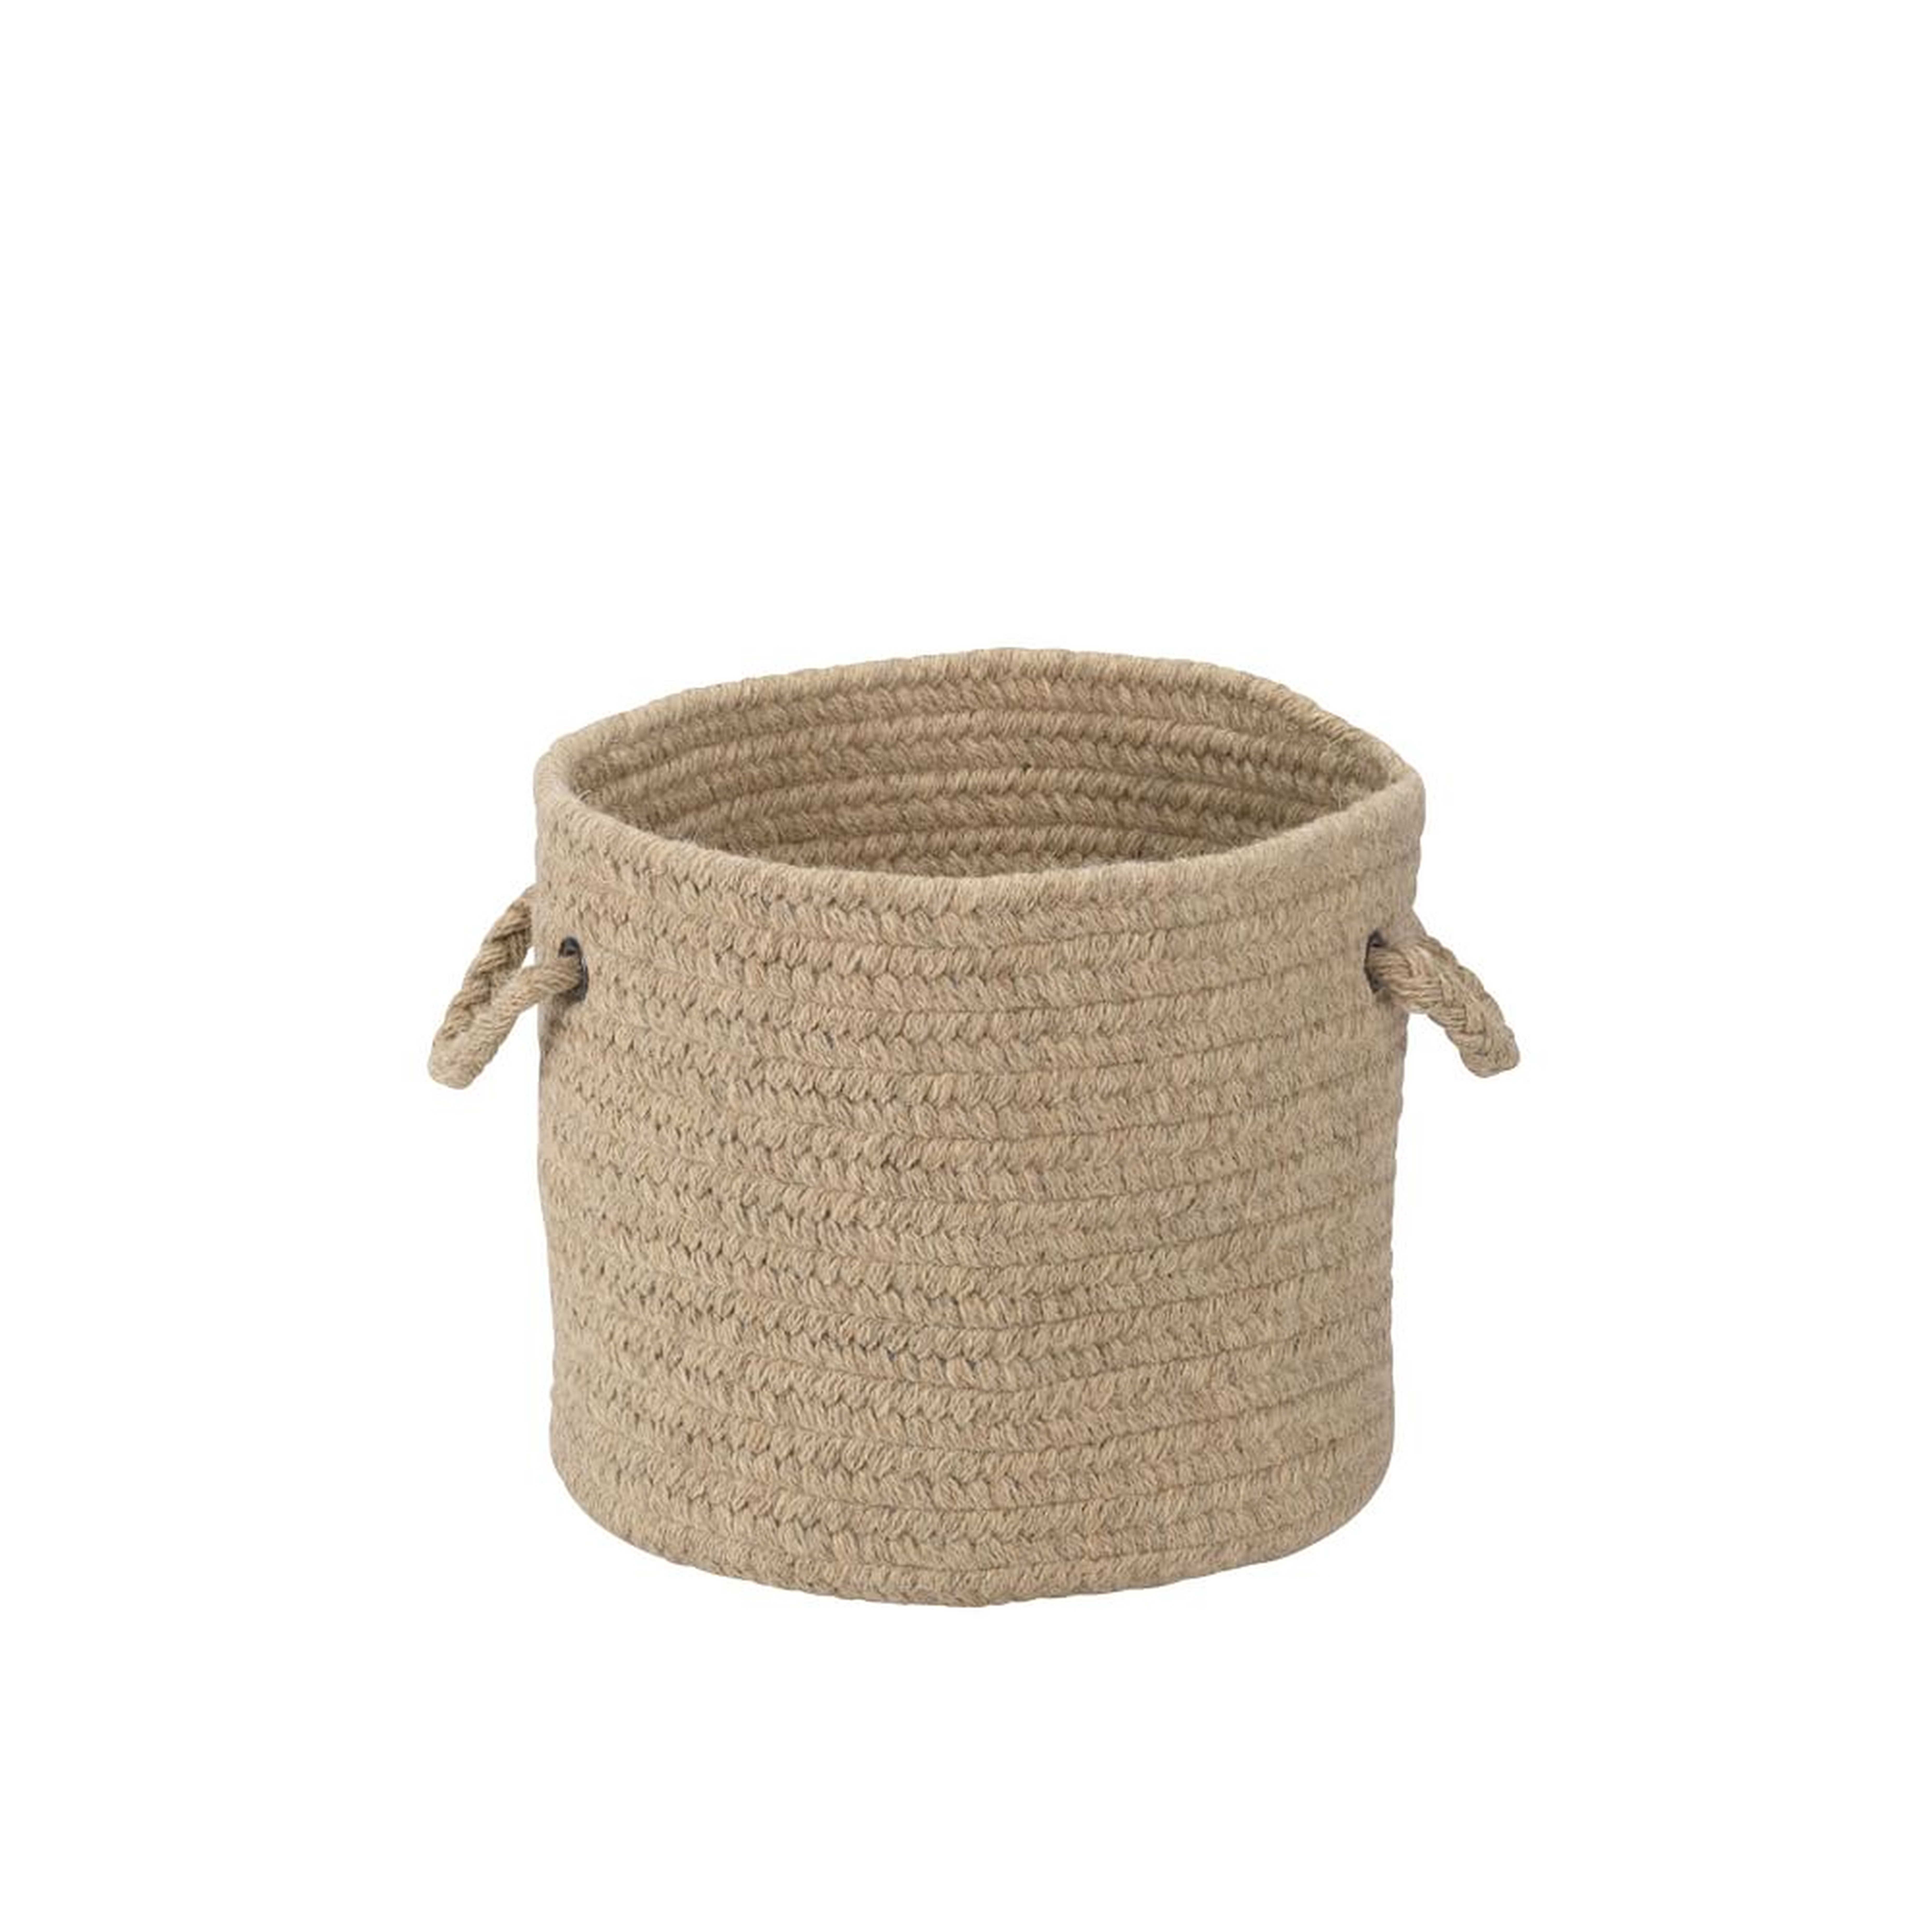 Natural Wool Basket, Light Beige, Small, 12"D x 10"H - West Elm